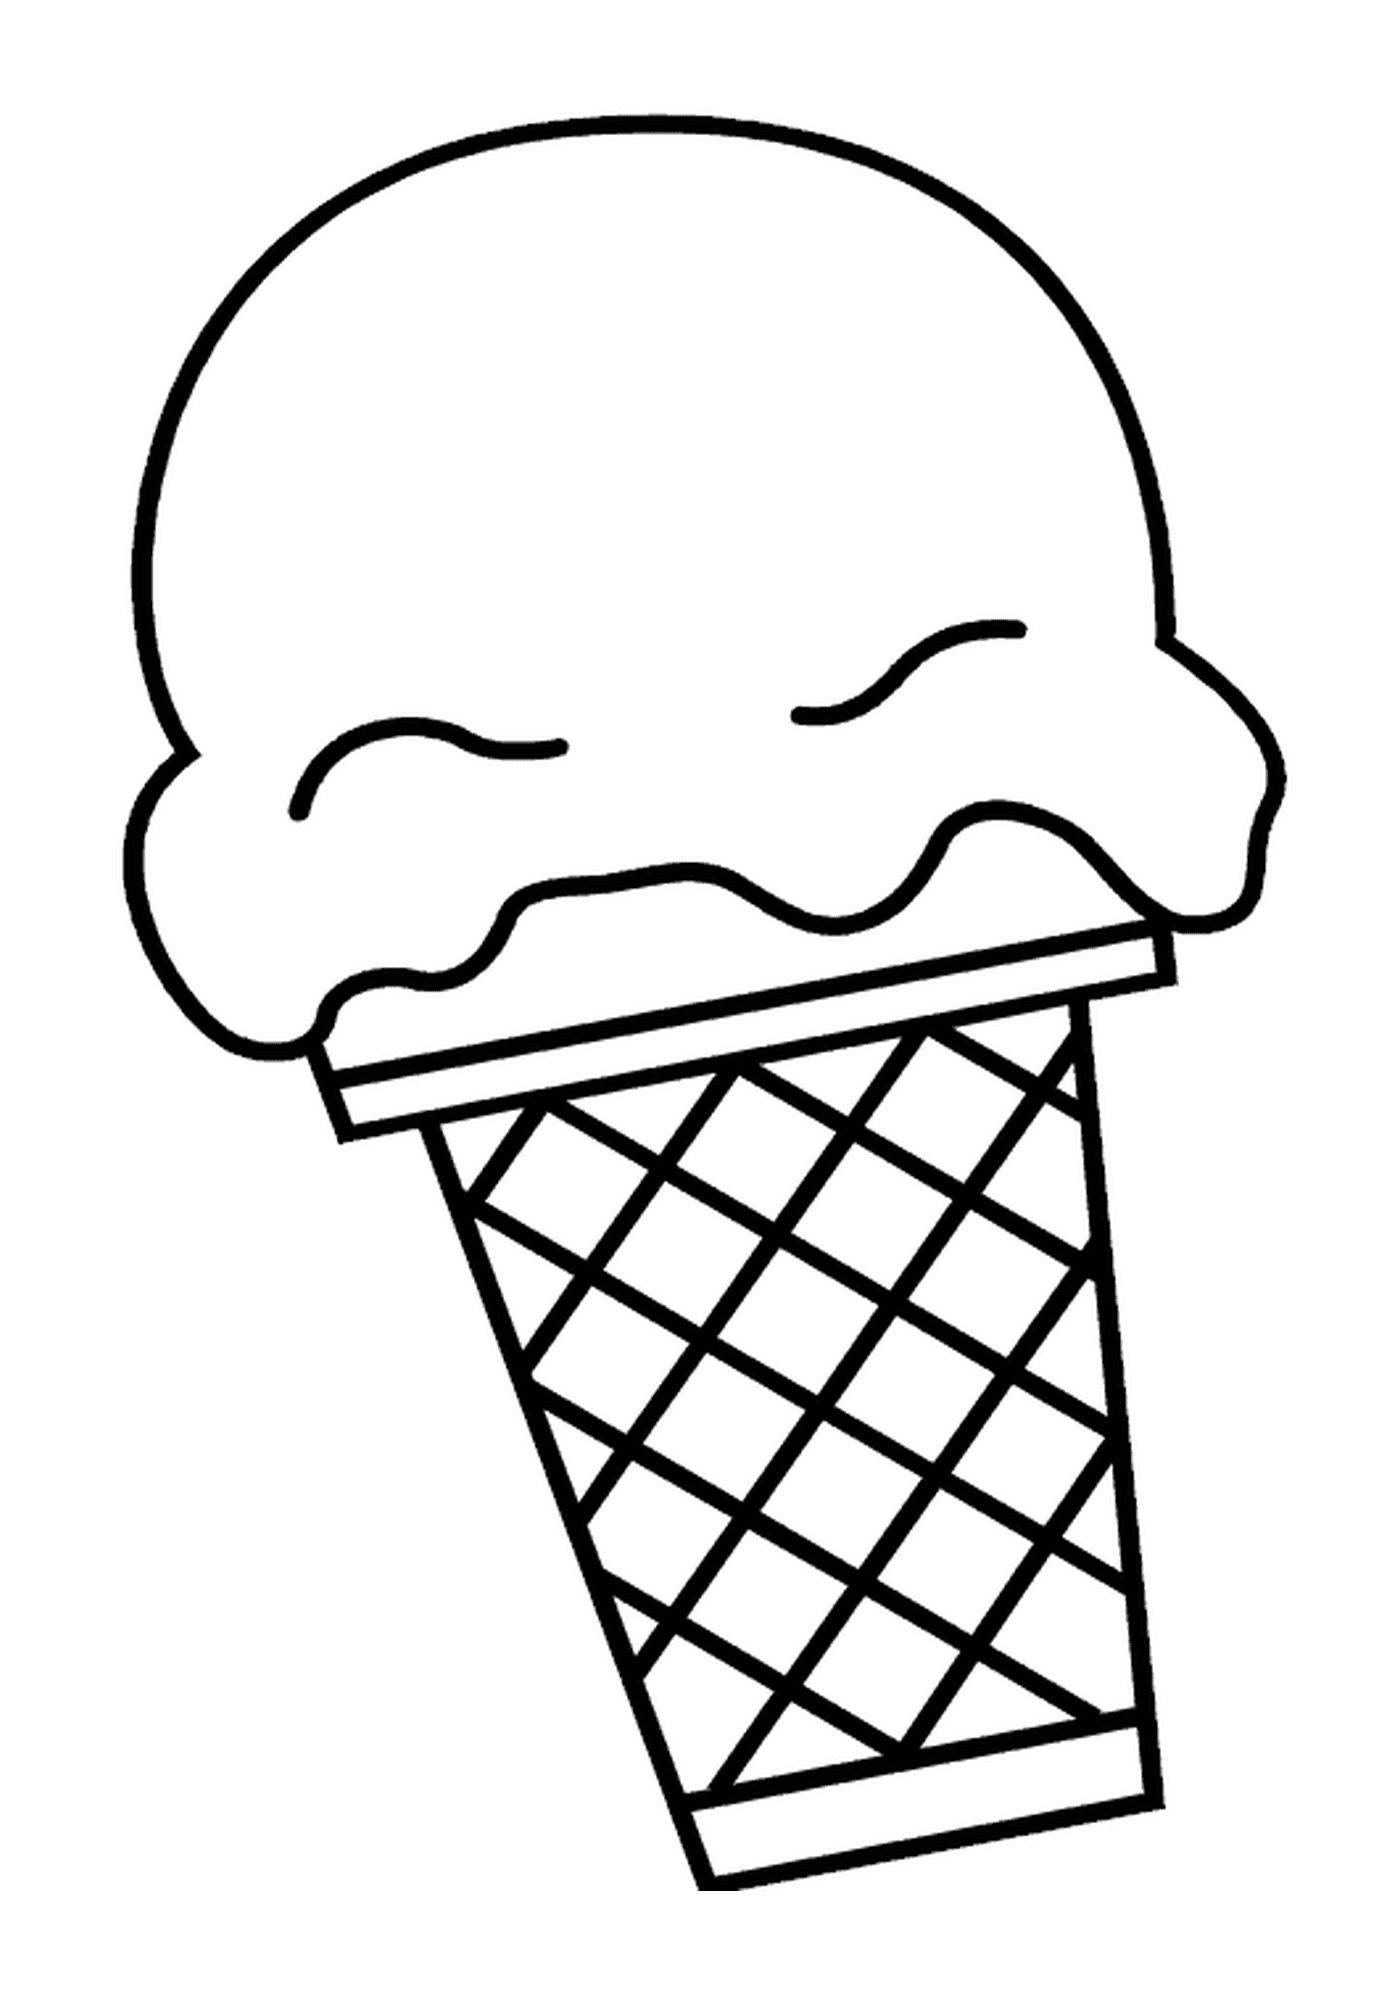  Um cone de sorvete com uma mordida 